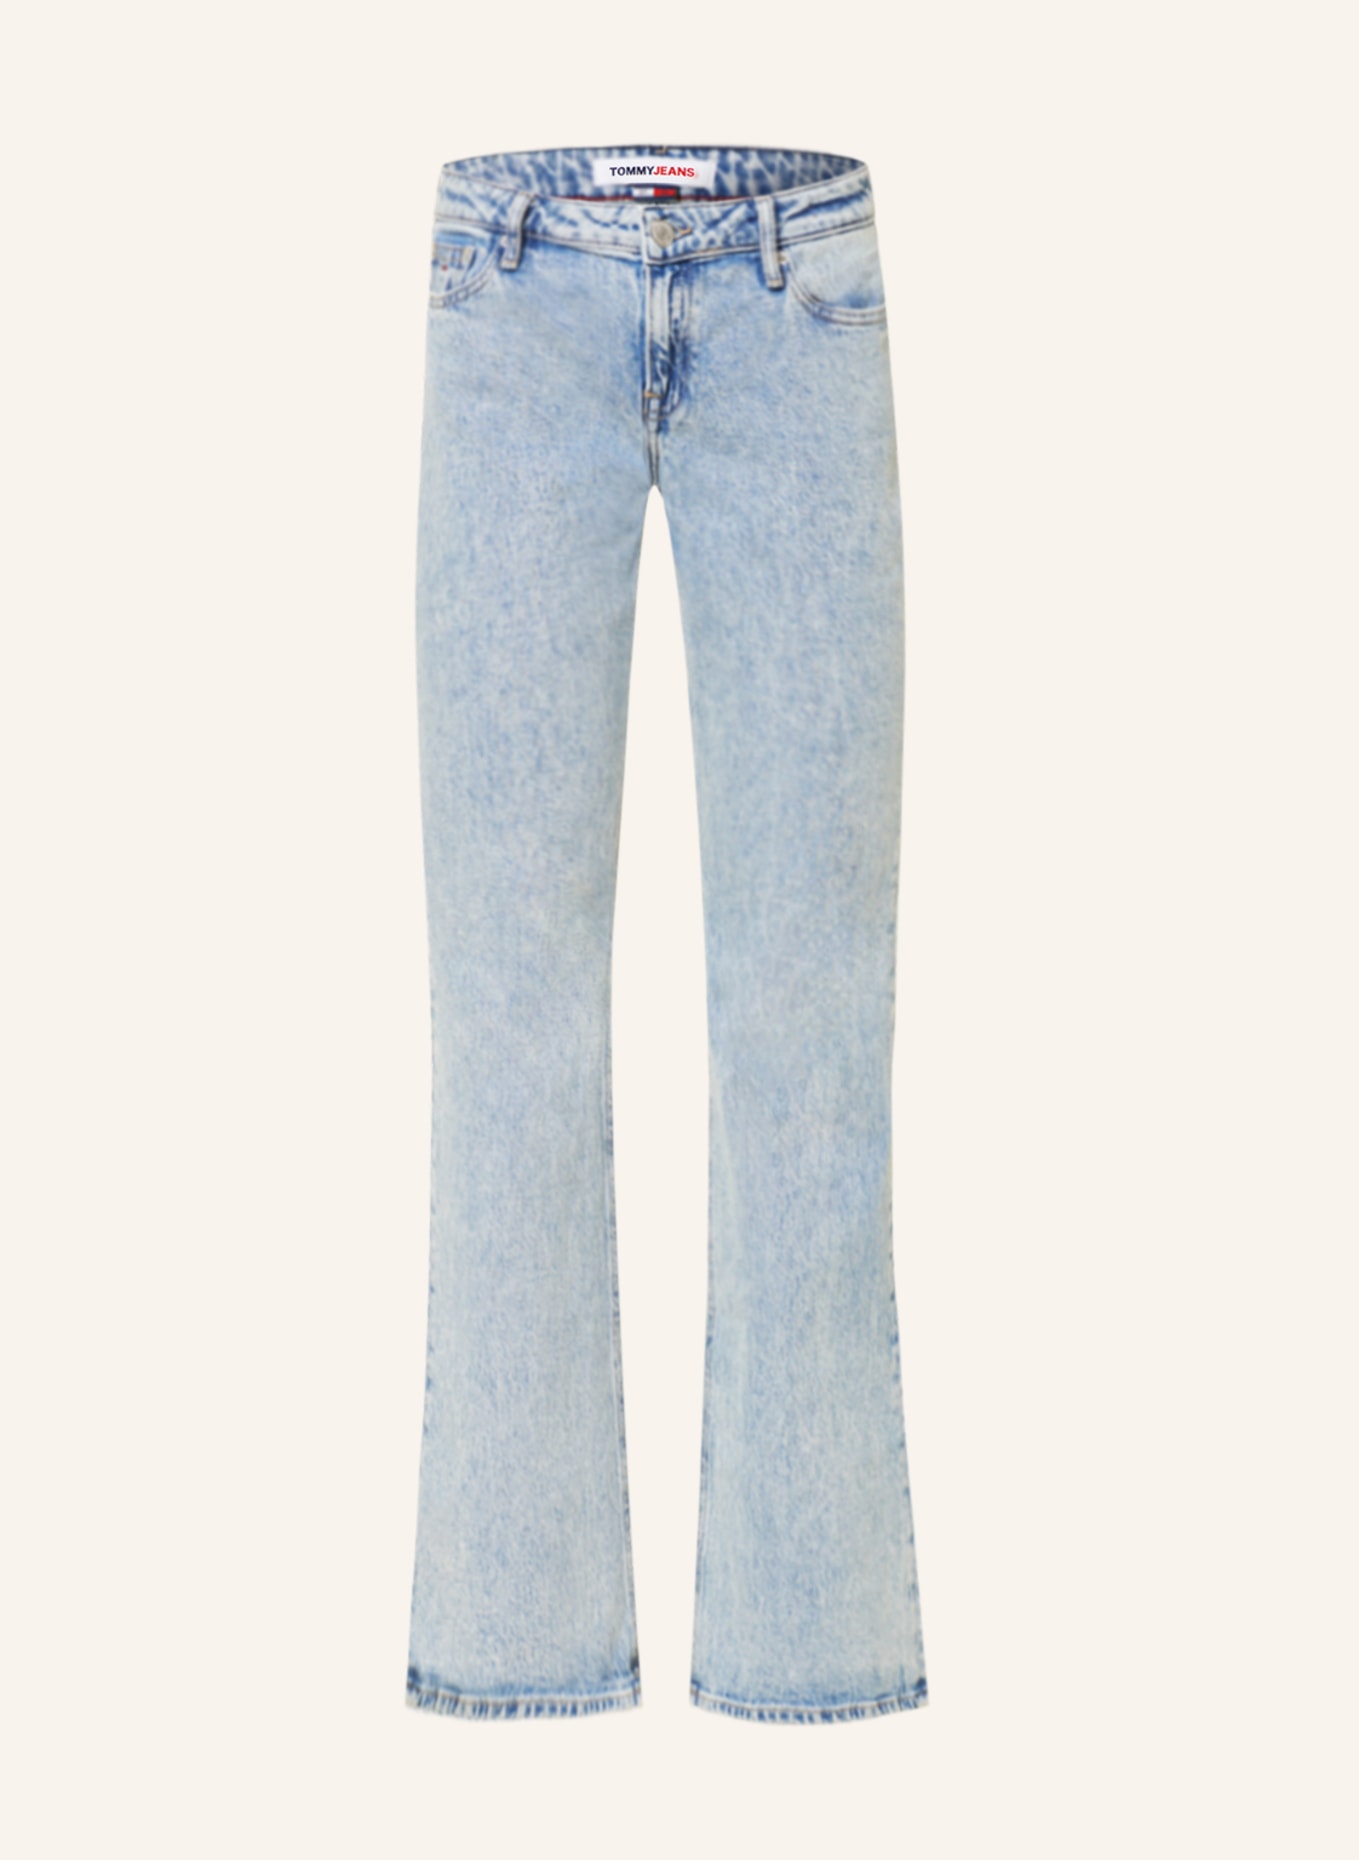 TOMMY JEANS Flared jeans SOPHIE, Color: 1AB Denim Light (Image 1)